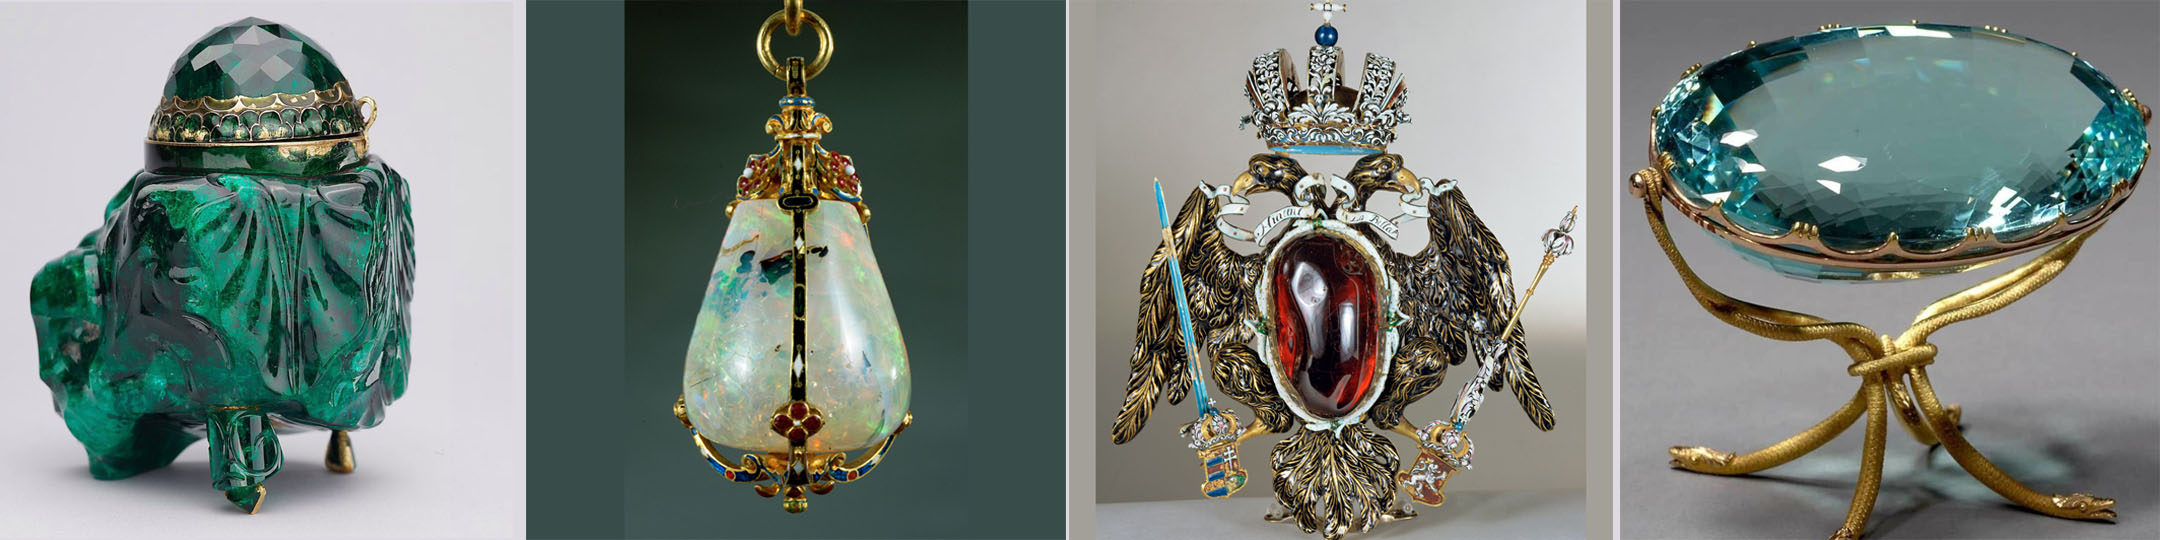 Imperial Treasury of Vienna | The Diamond Talk